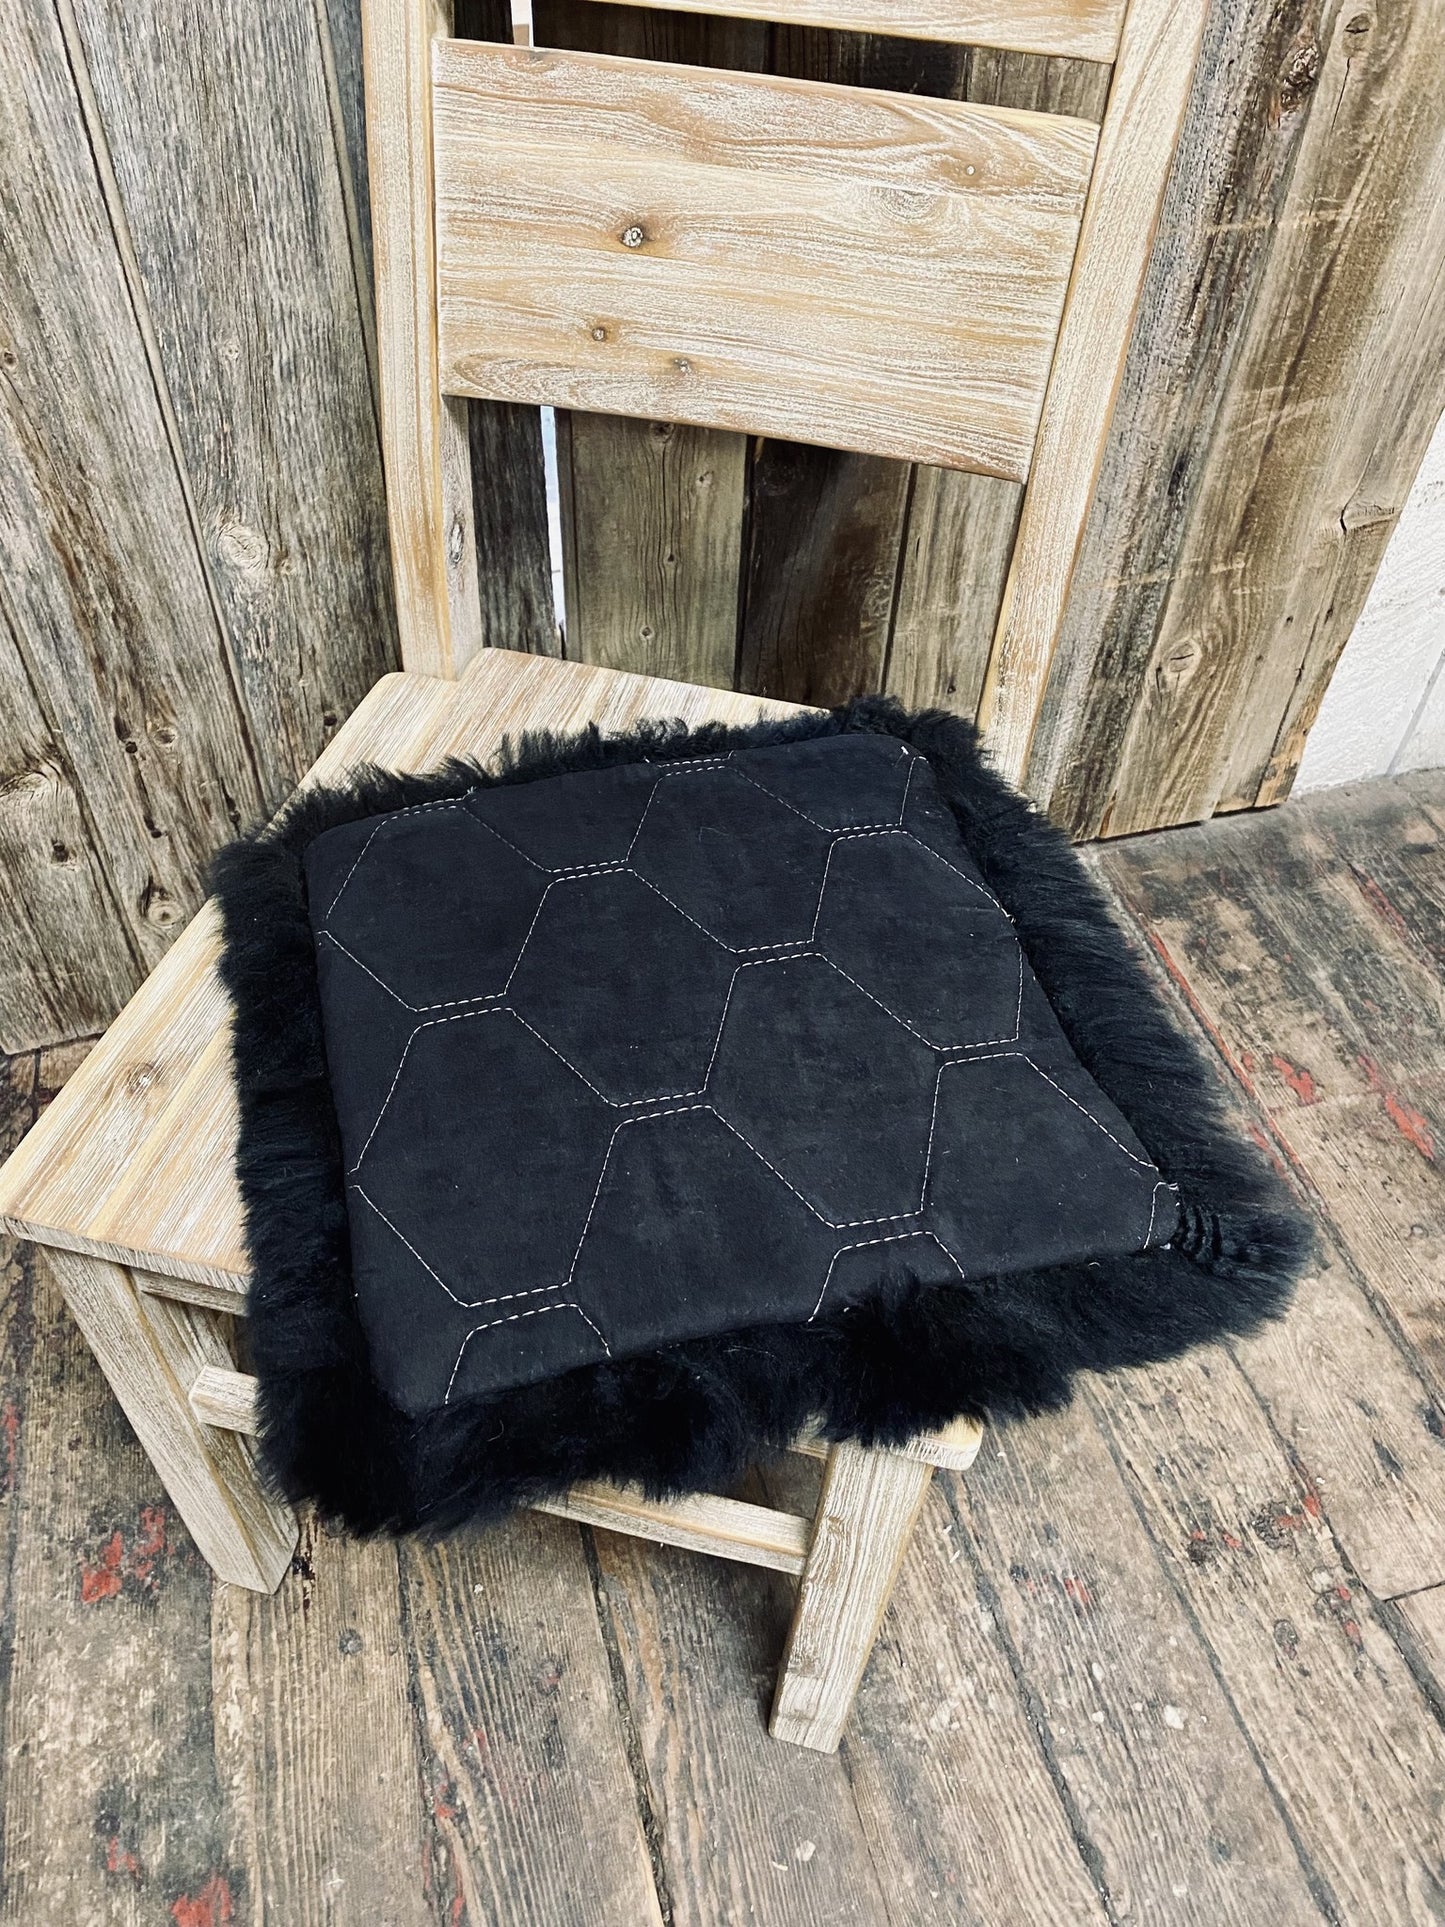 Sheepskin Cushion / Chairpad 14" BLACK